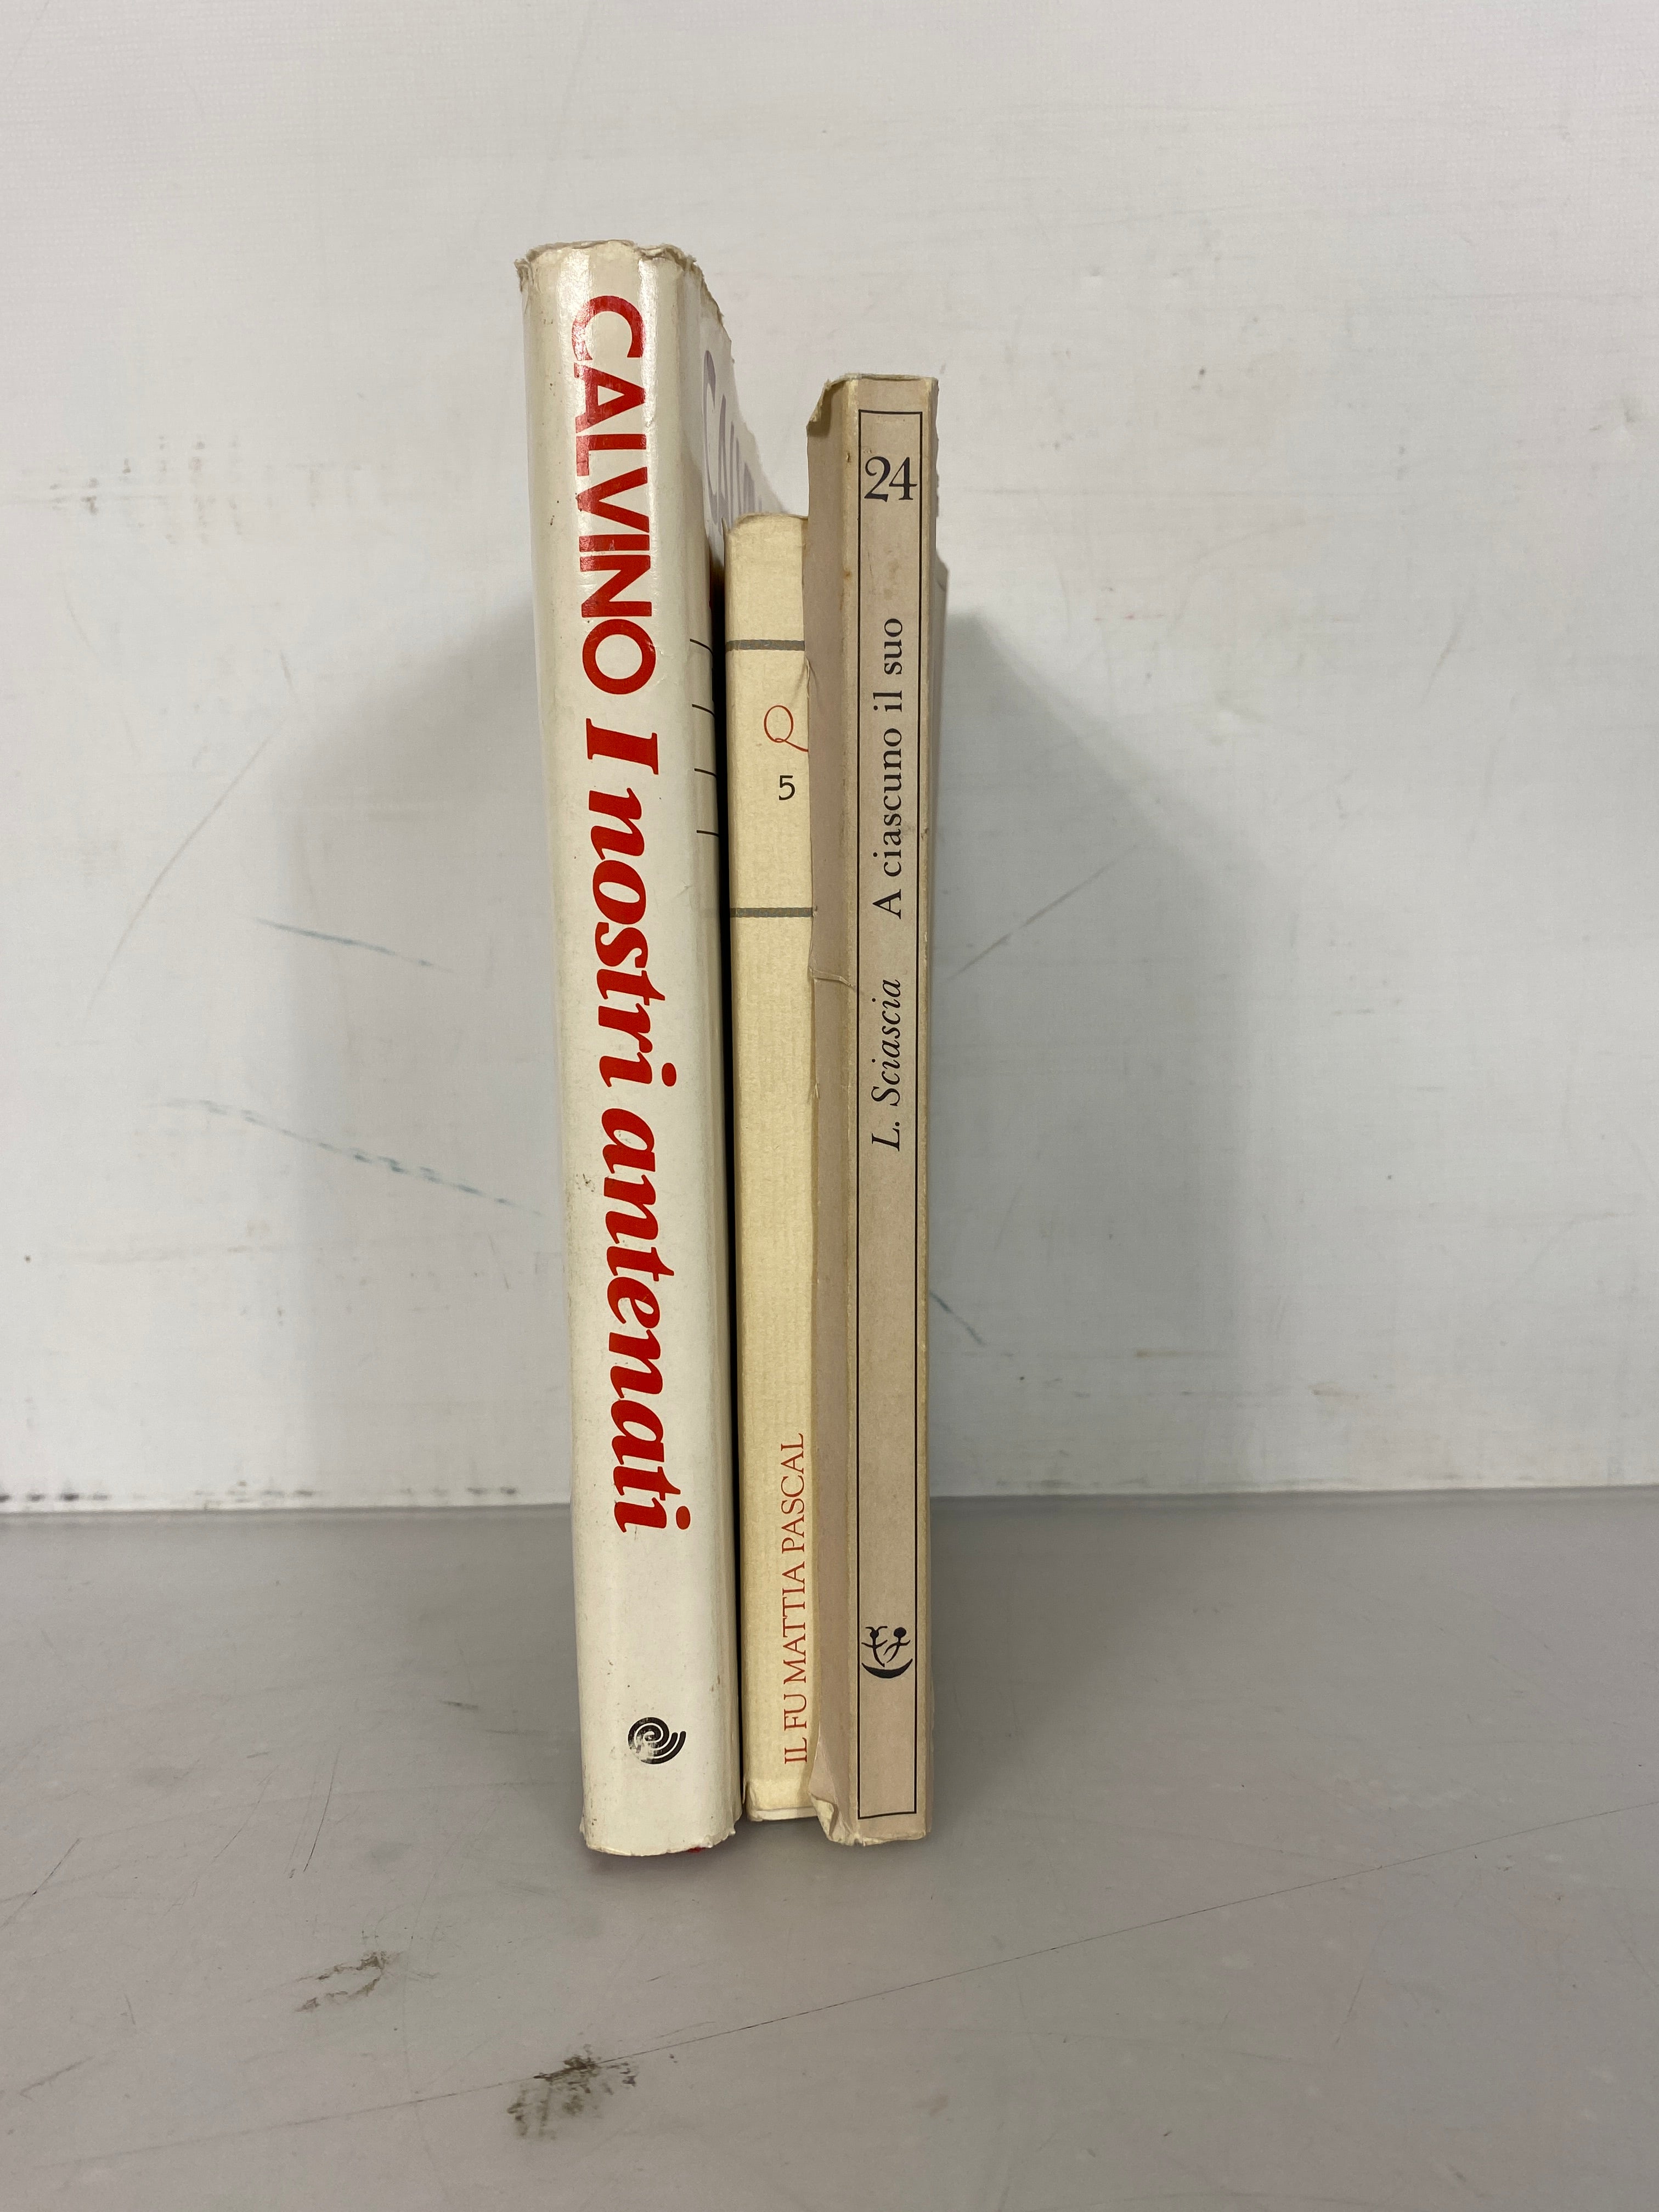 Lot of 3 Italian Language Novels: Il Fu Mattia Pascal by Pirandello, A Ciascuno Il Suo by Sciascia, and Calvino I Nostri Antenati 1985-1995